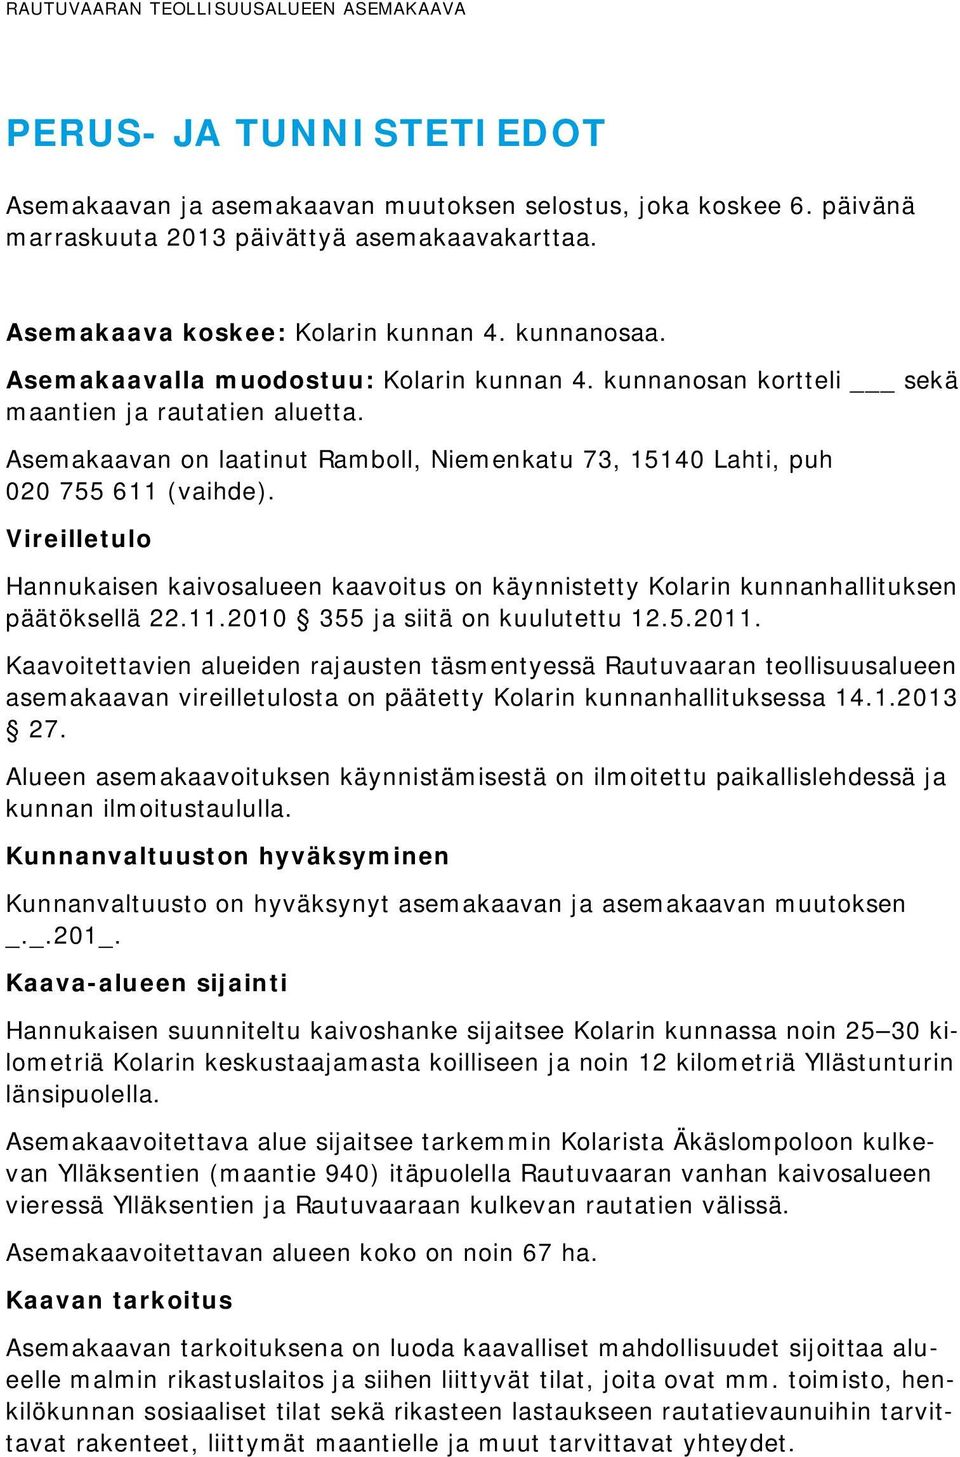 Vireilletulo Hannukaisen kaivosalueen kaavoitus on käynnistetty Kolarin kunnanhallituksen päätöksellä 22.11.2010 355 ja siitä on kuulutettu 12.5.2011.